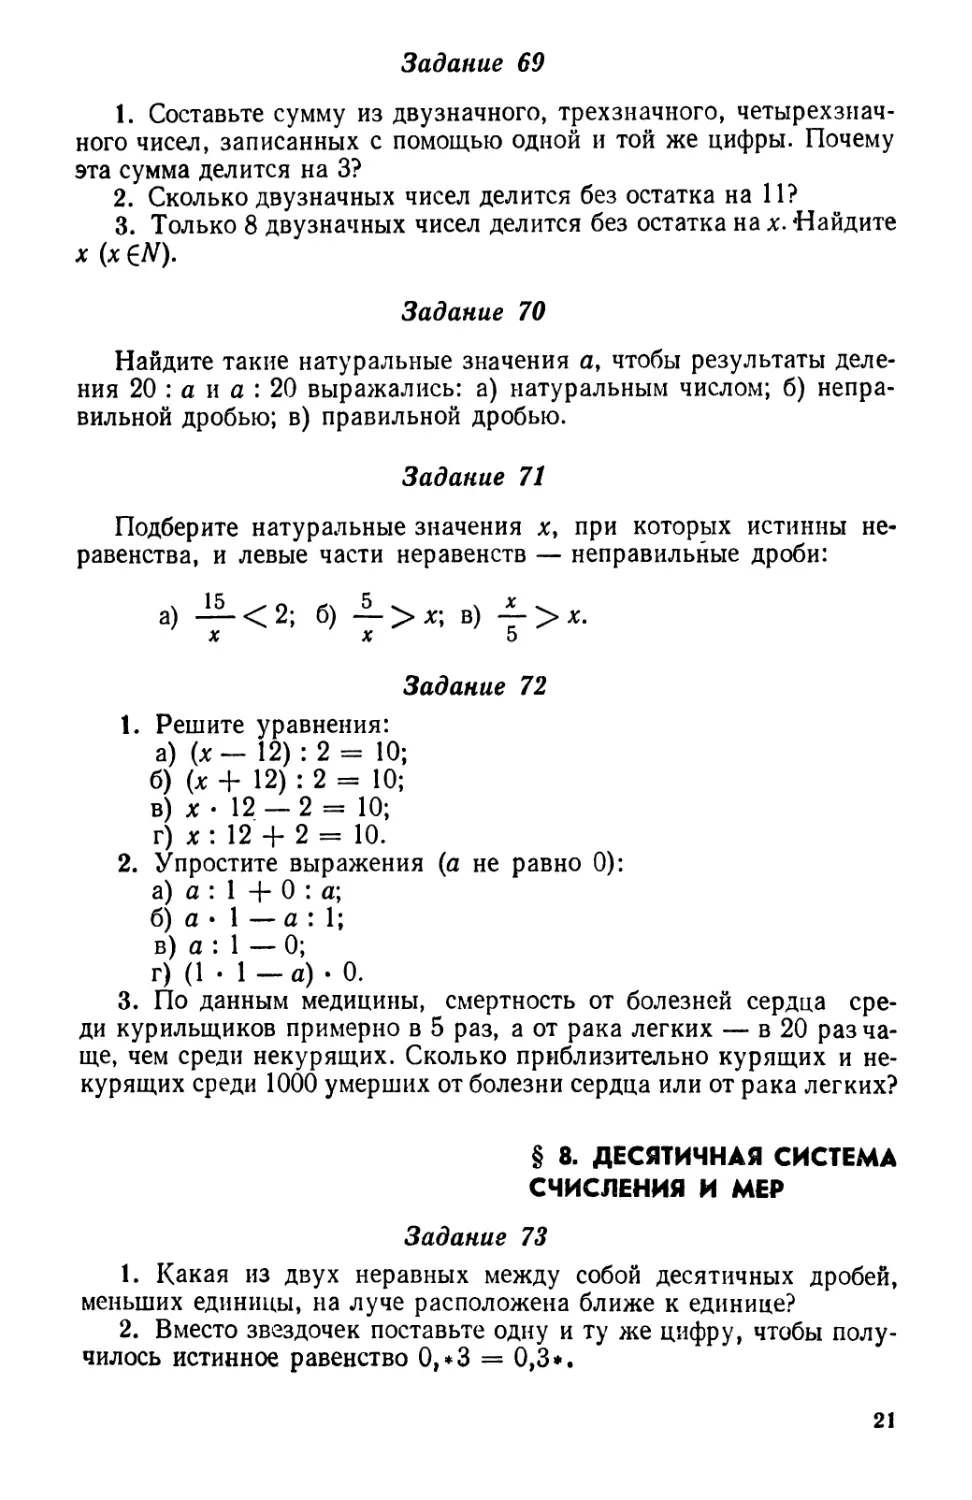 § 8. Десятичная система счисления и мер